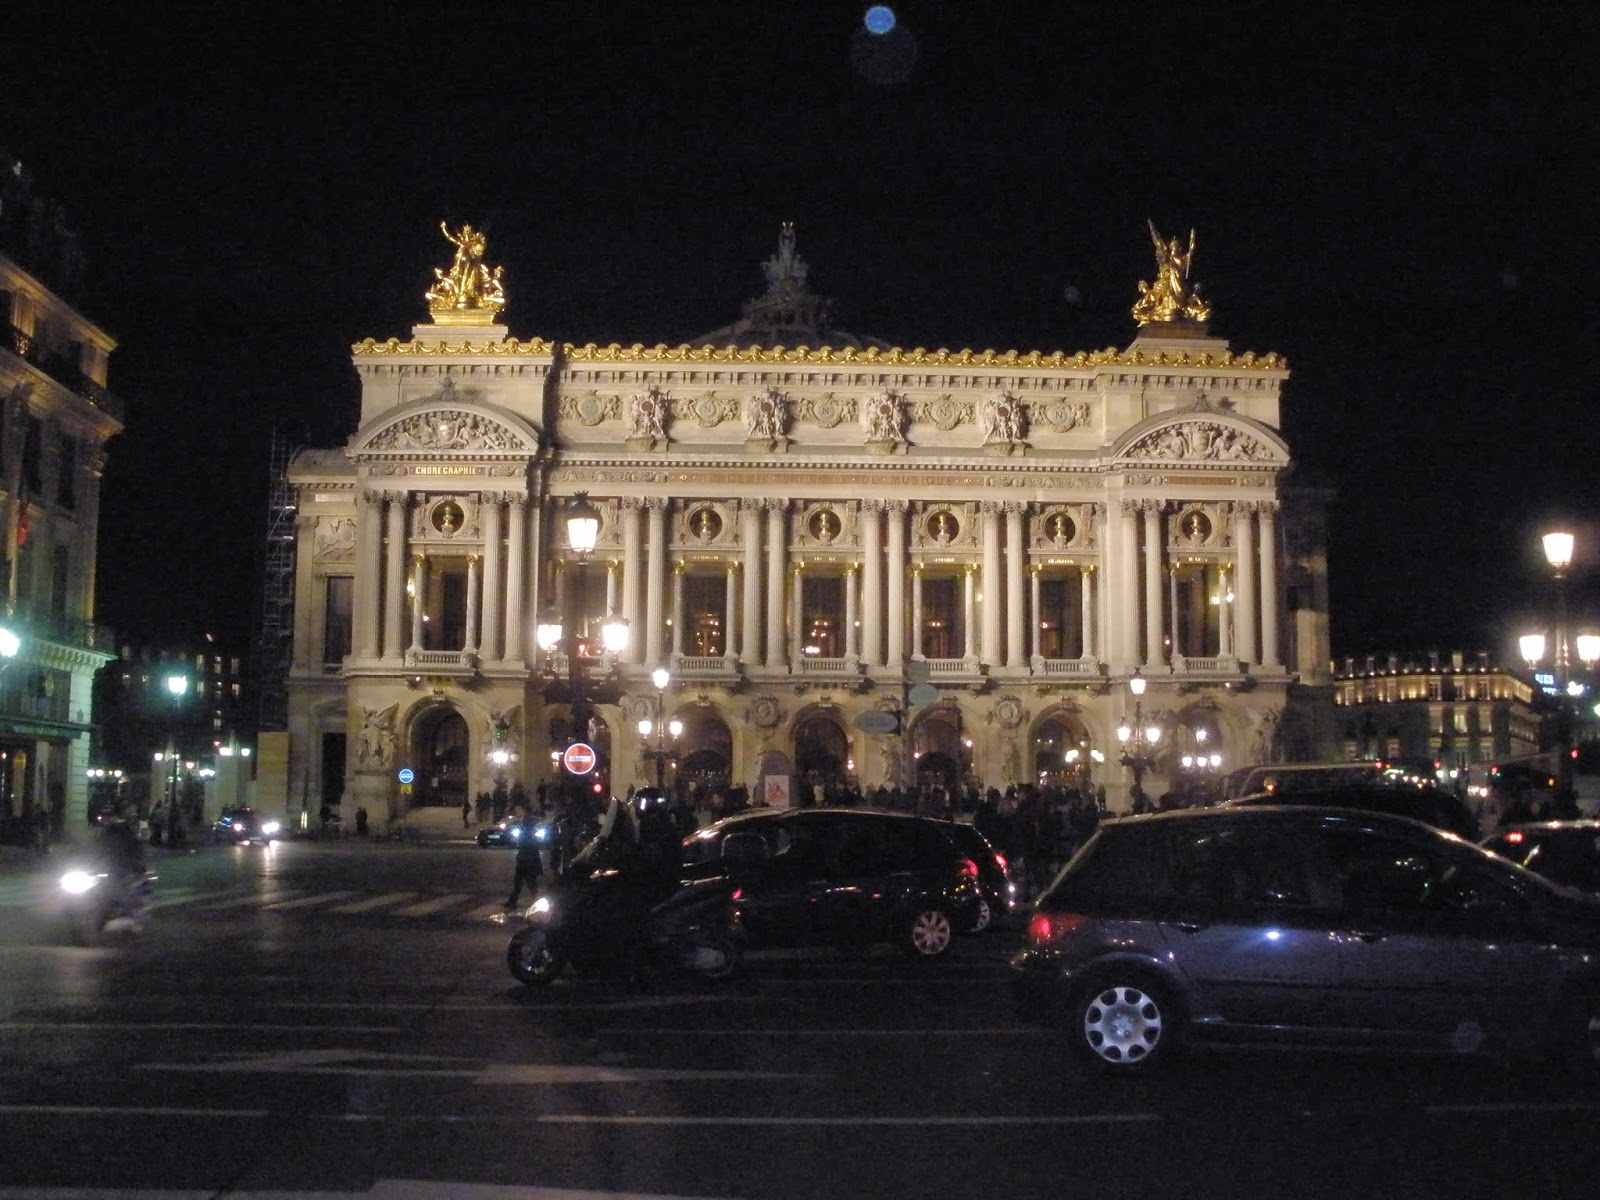 Ópera Garnier, es la Ópera Nacional de París.